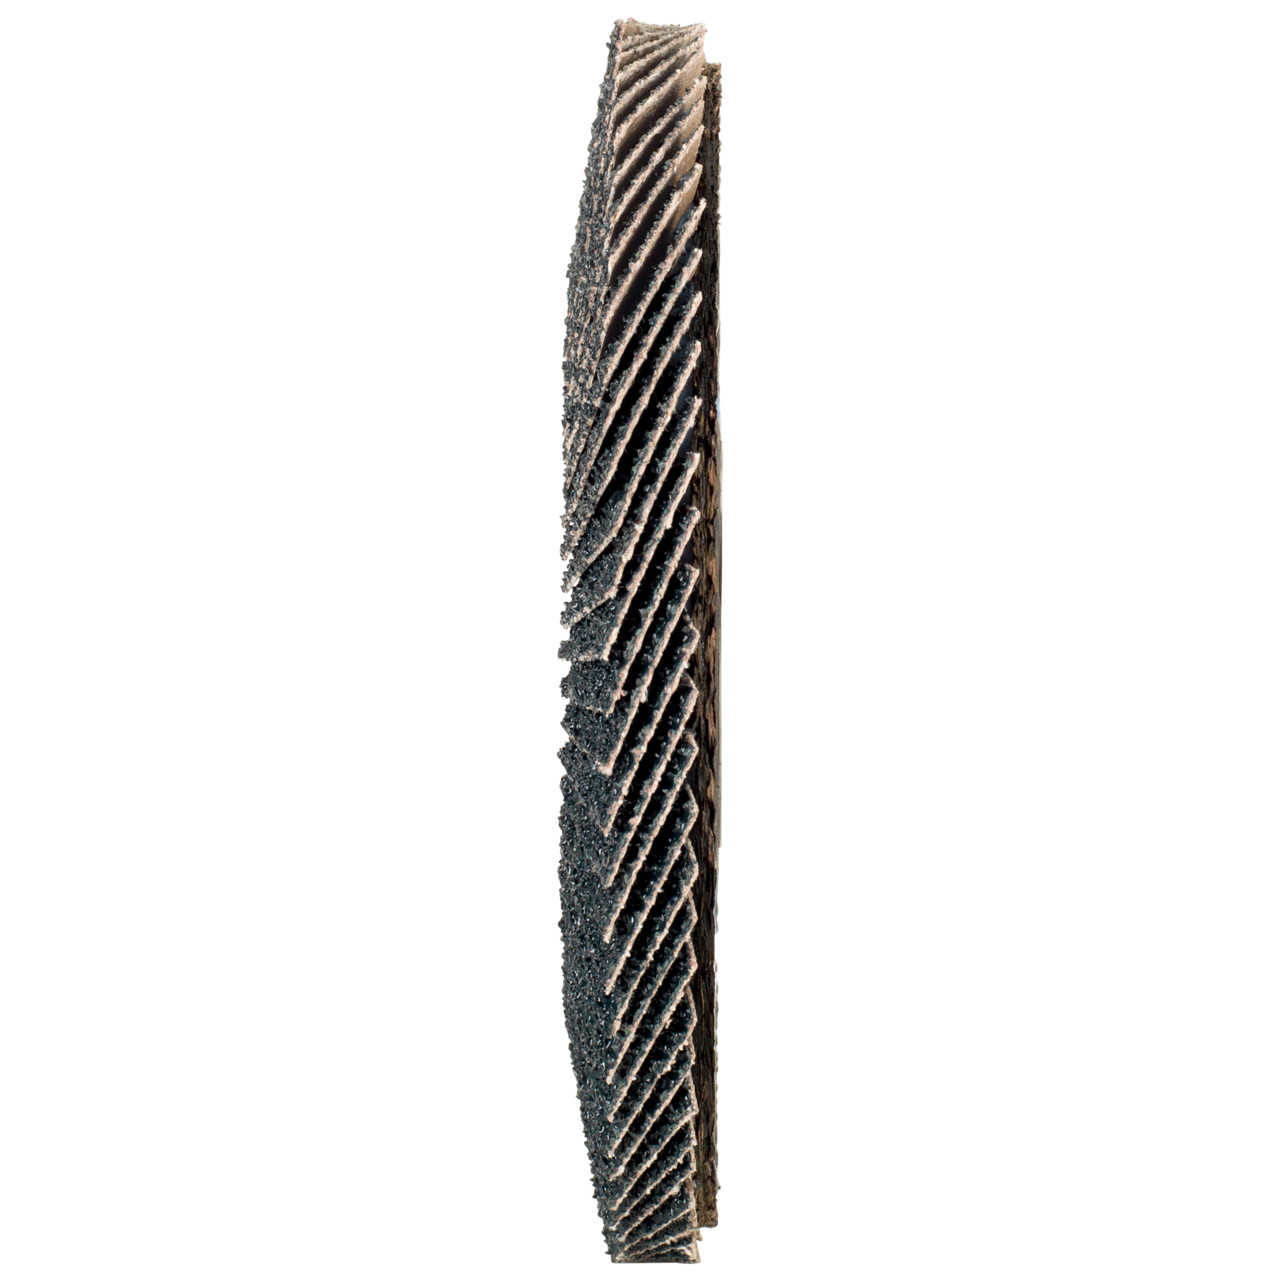 TYROLIT Fächerscheibe DxH 178x22,2 2in1 für Stahl & Edelstahl, P60, Form: 27A - gekröpfte Ausführung (Glasfaserträgerkörperausführung), Art. 668672